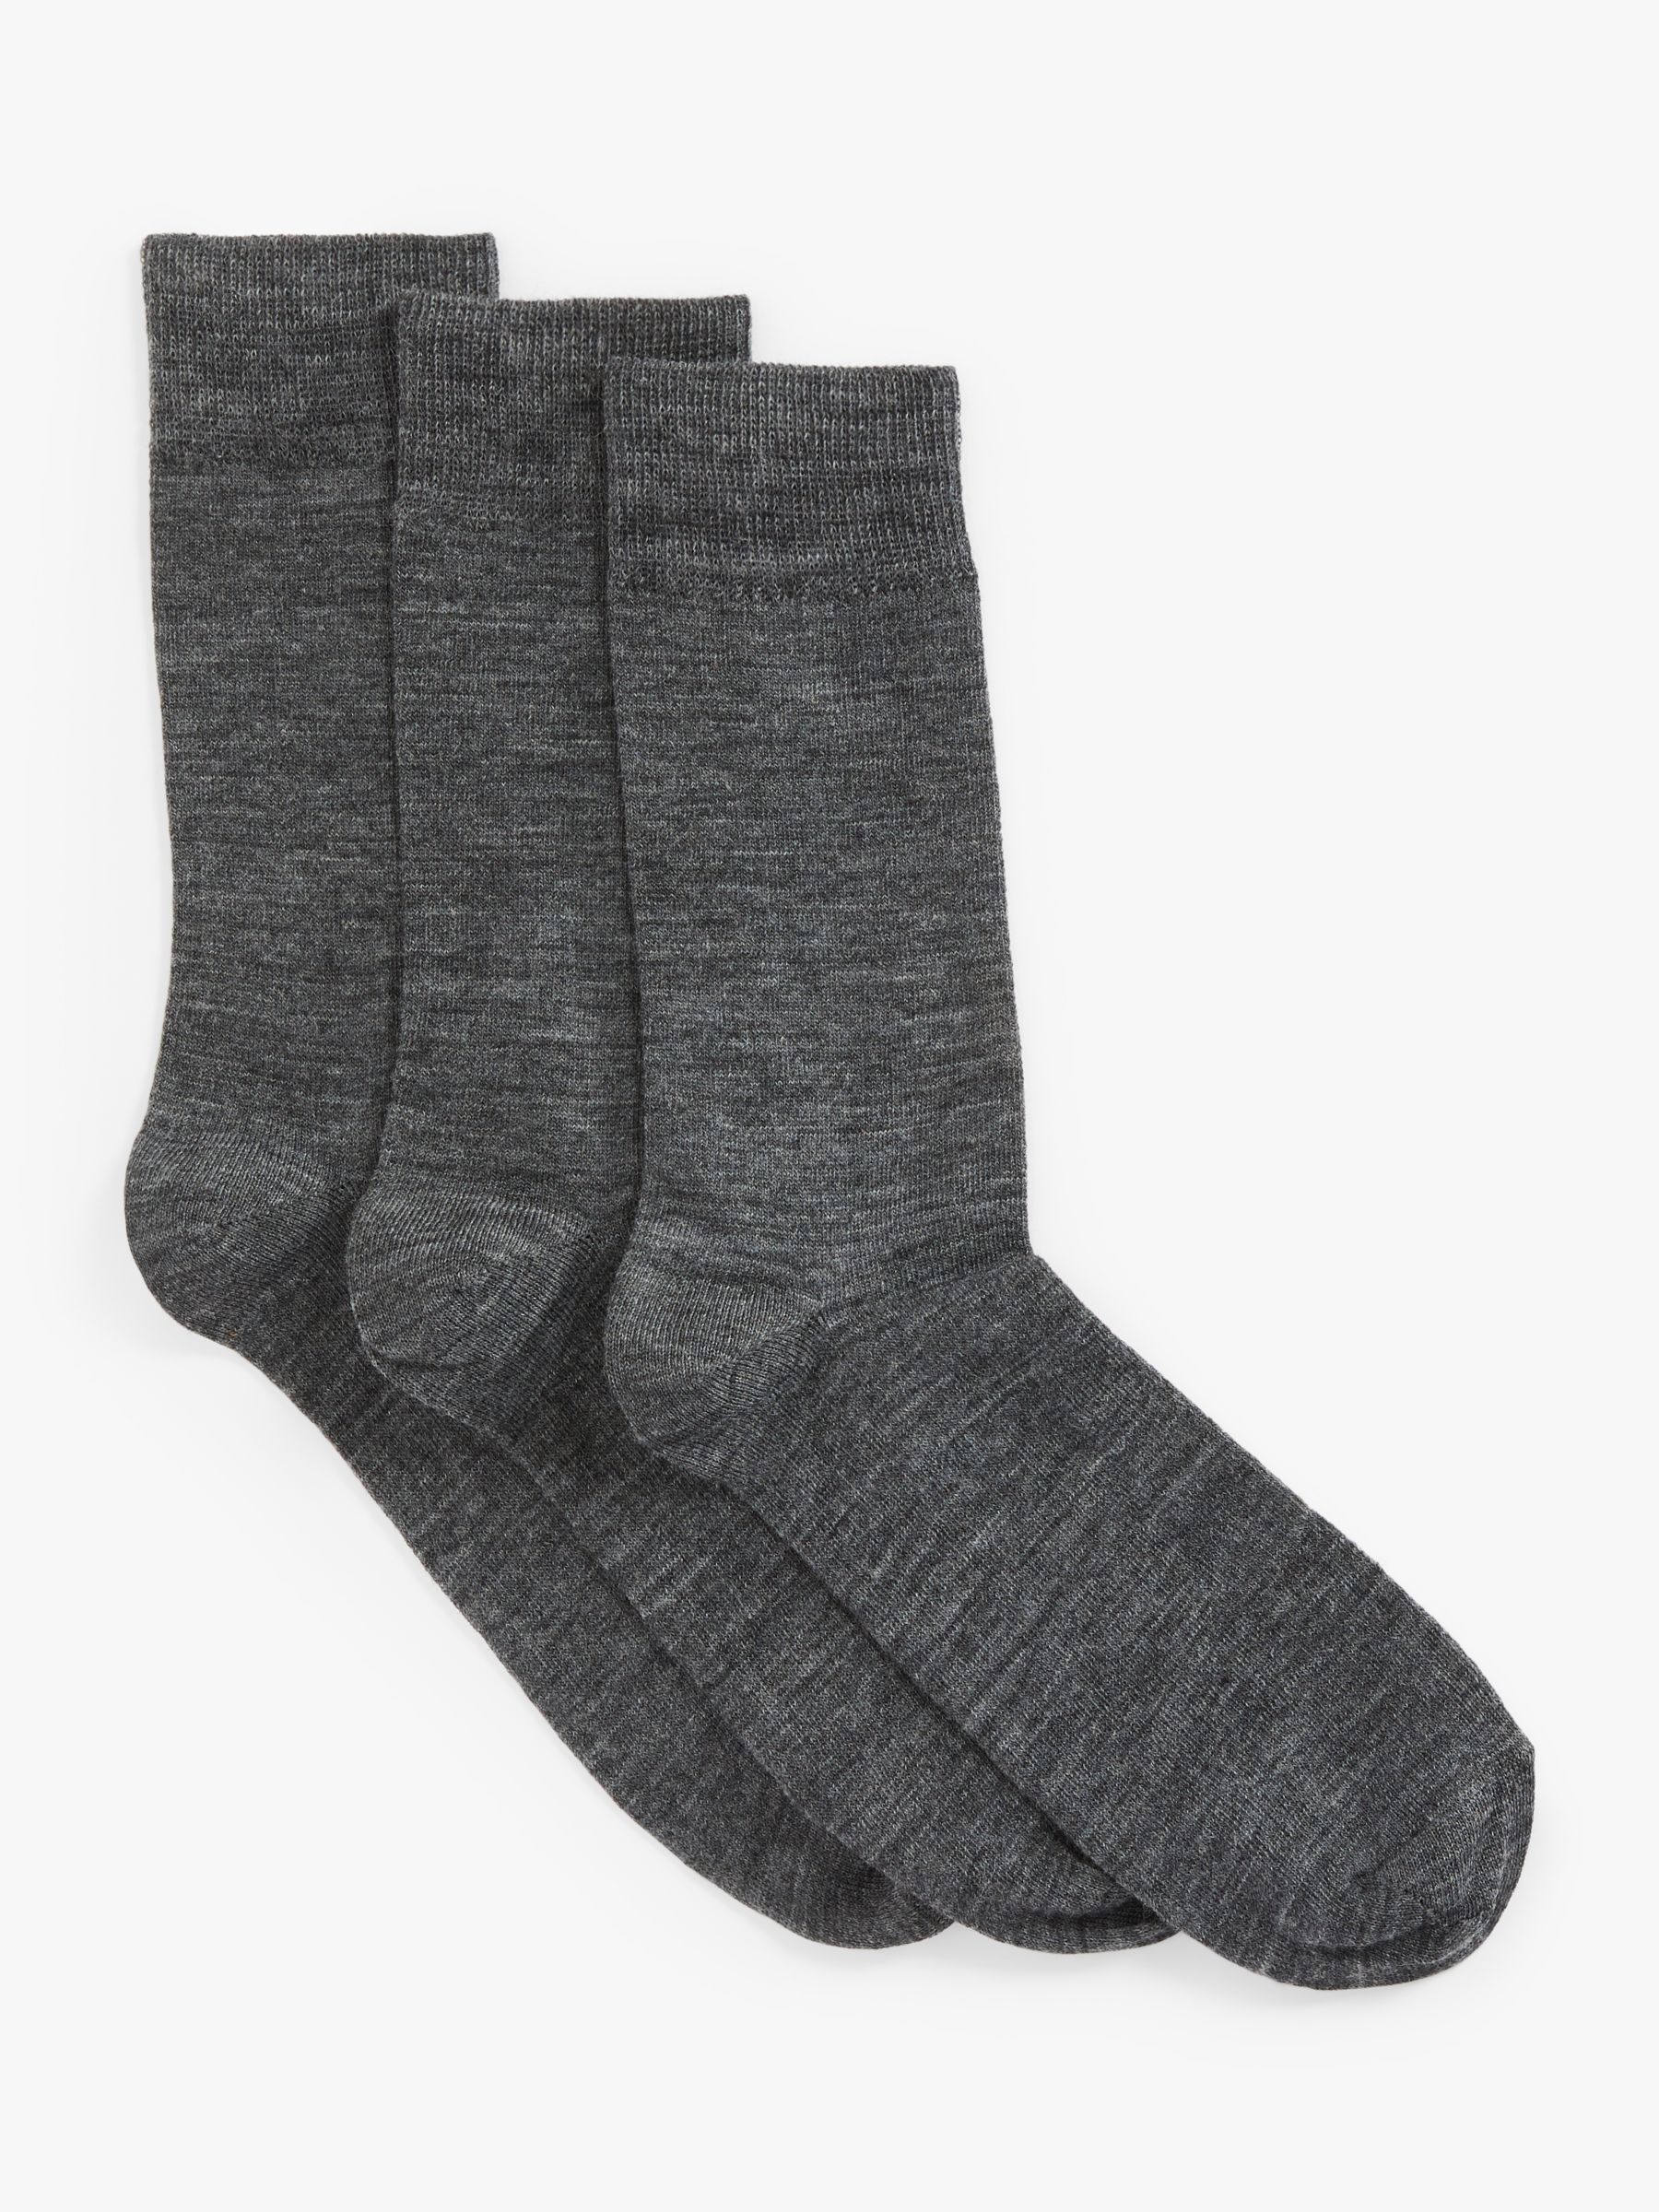 John Lewis Wool Mix Men's Socks, Pack of 3, Grey at John Lewis & Partners